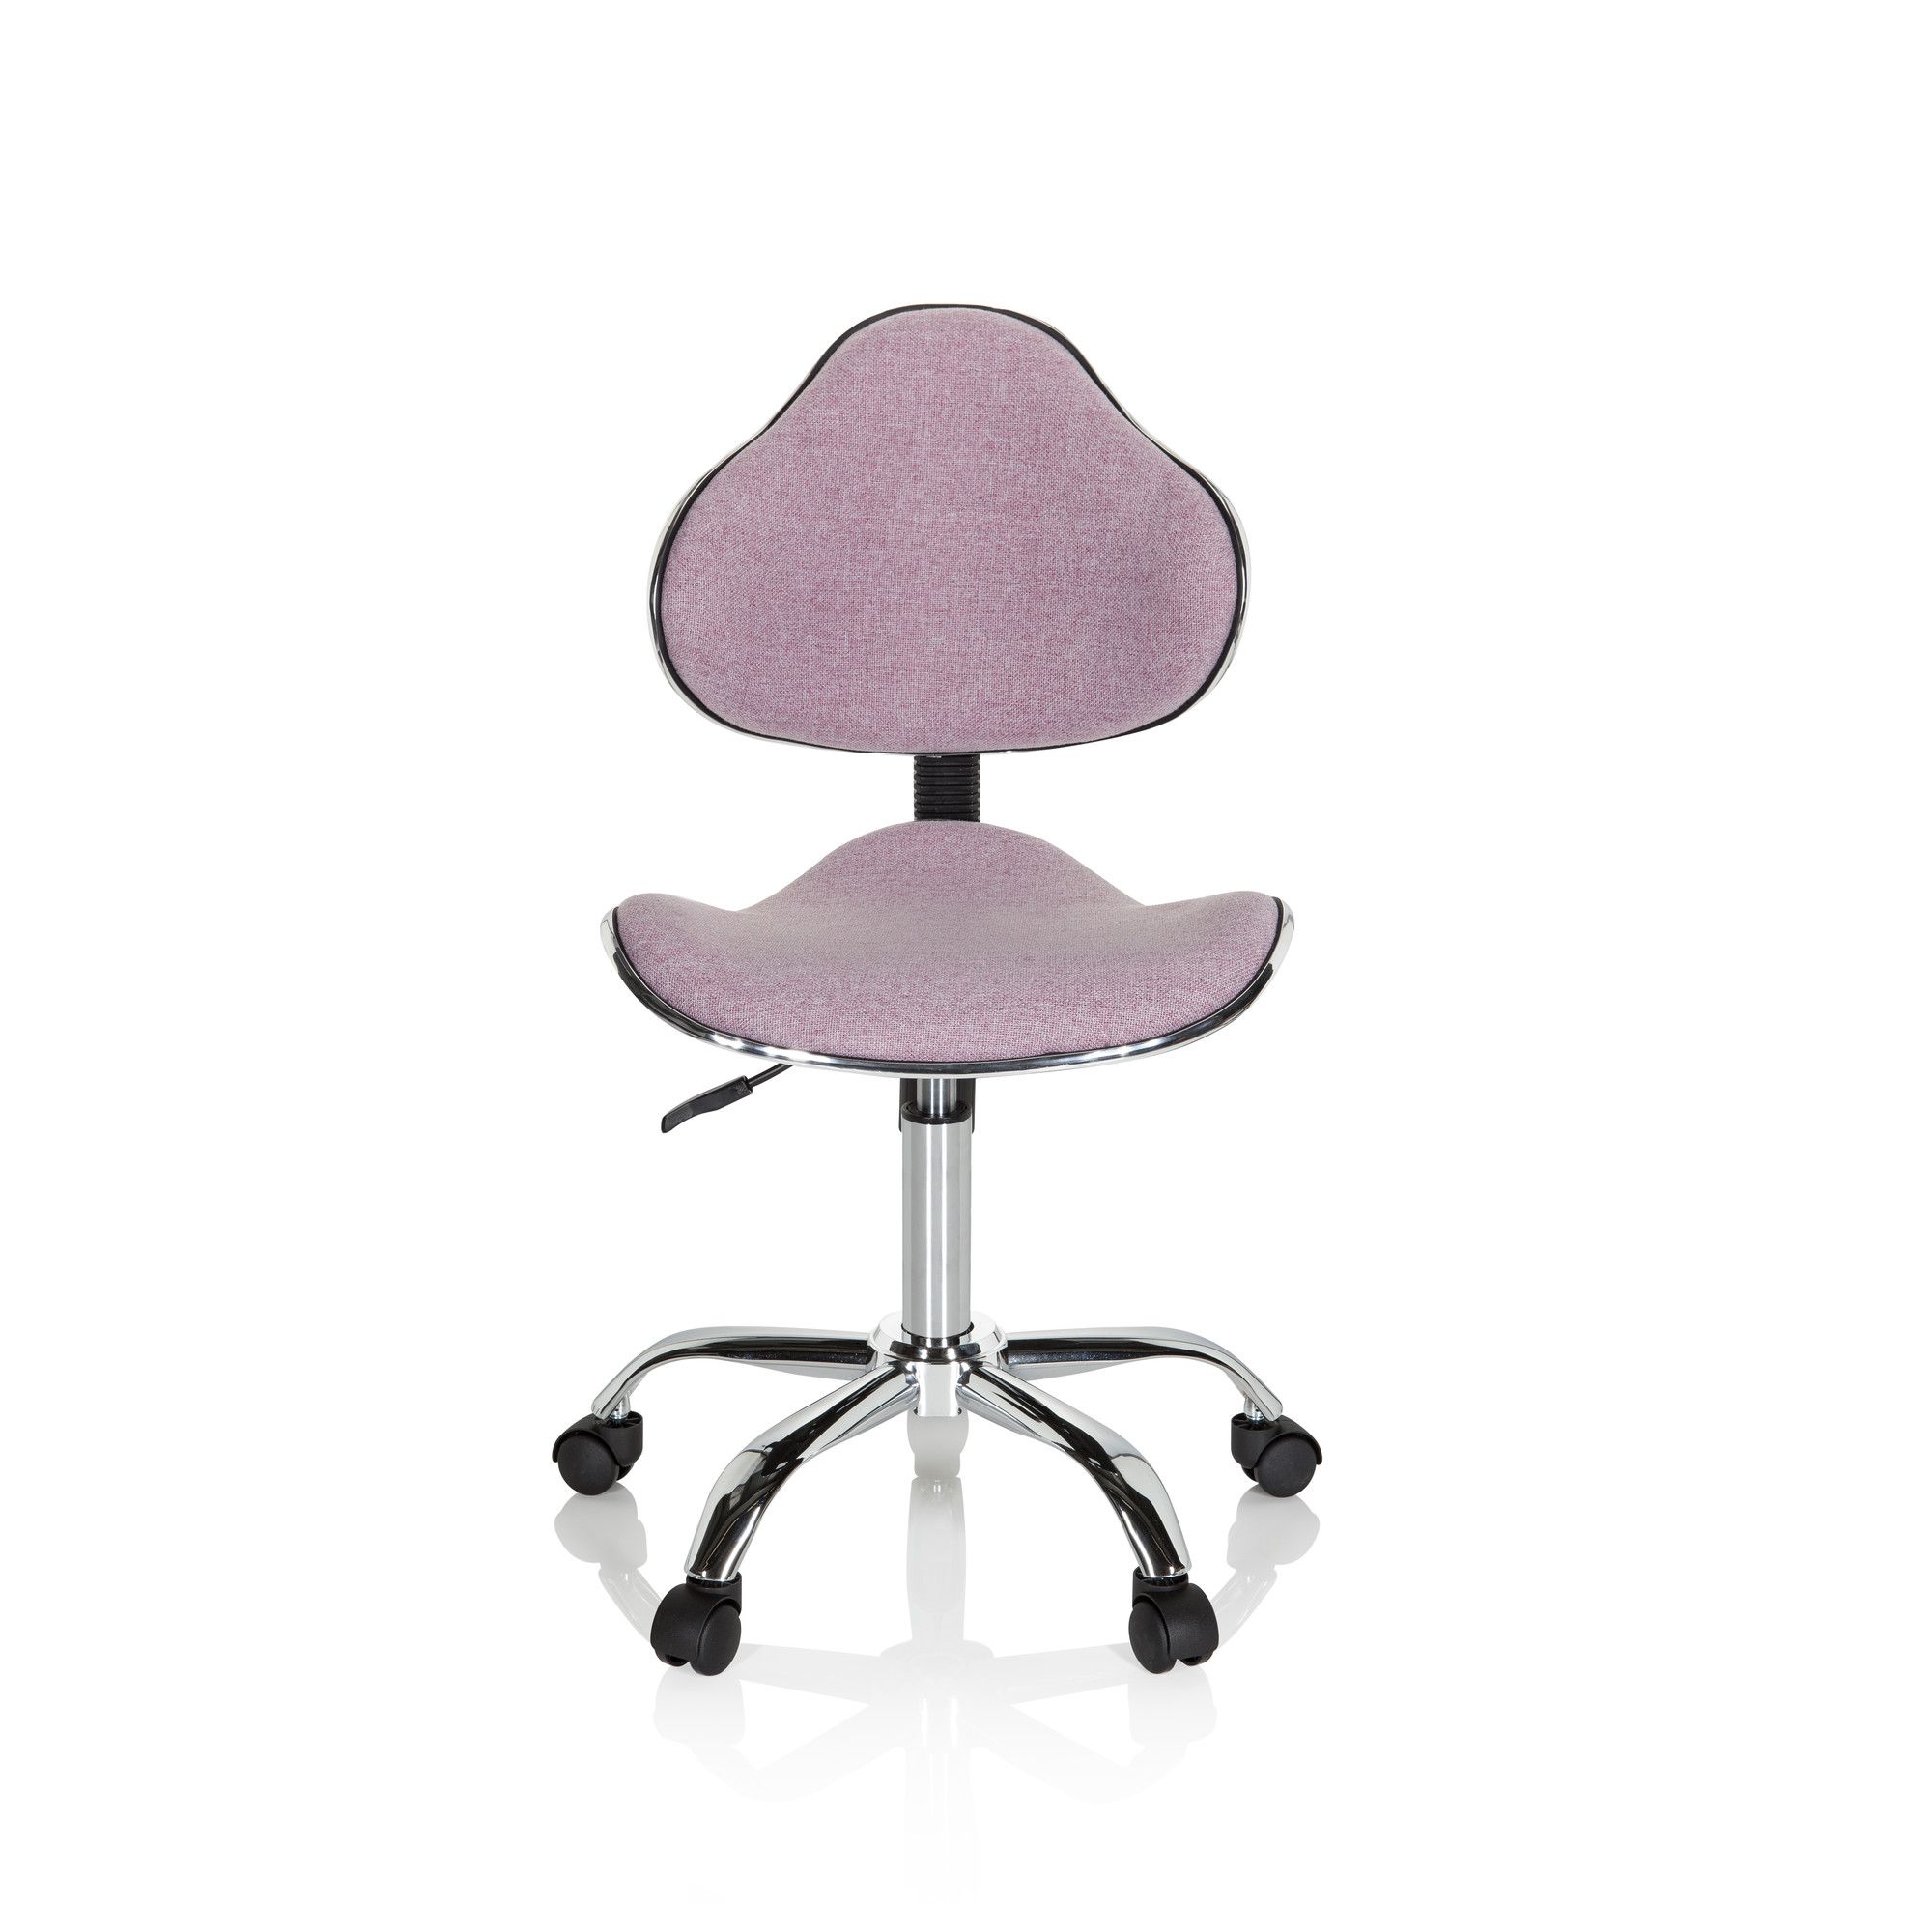 chaise de bureau pour enfant kiddy gti-3 tissu rose - hjh office - ergonomique - assise active - design coque